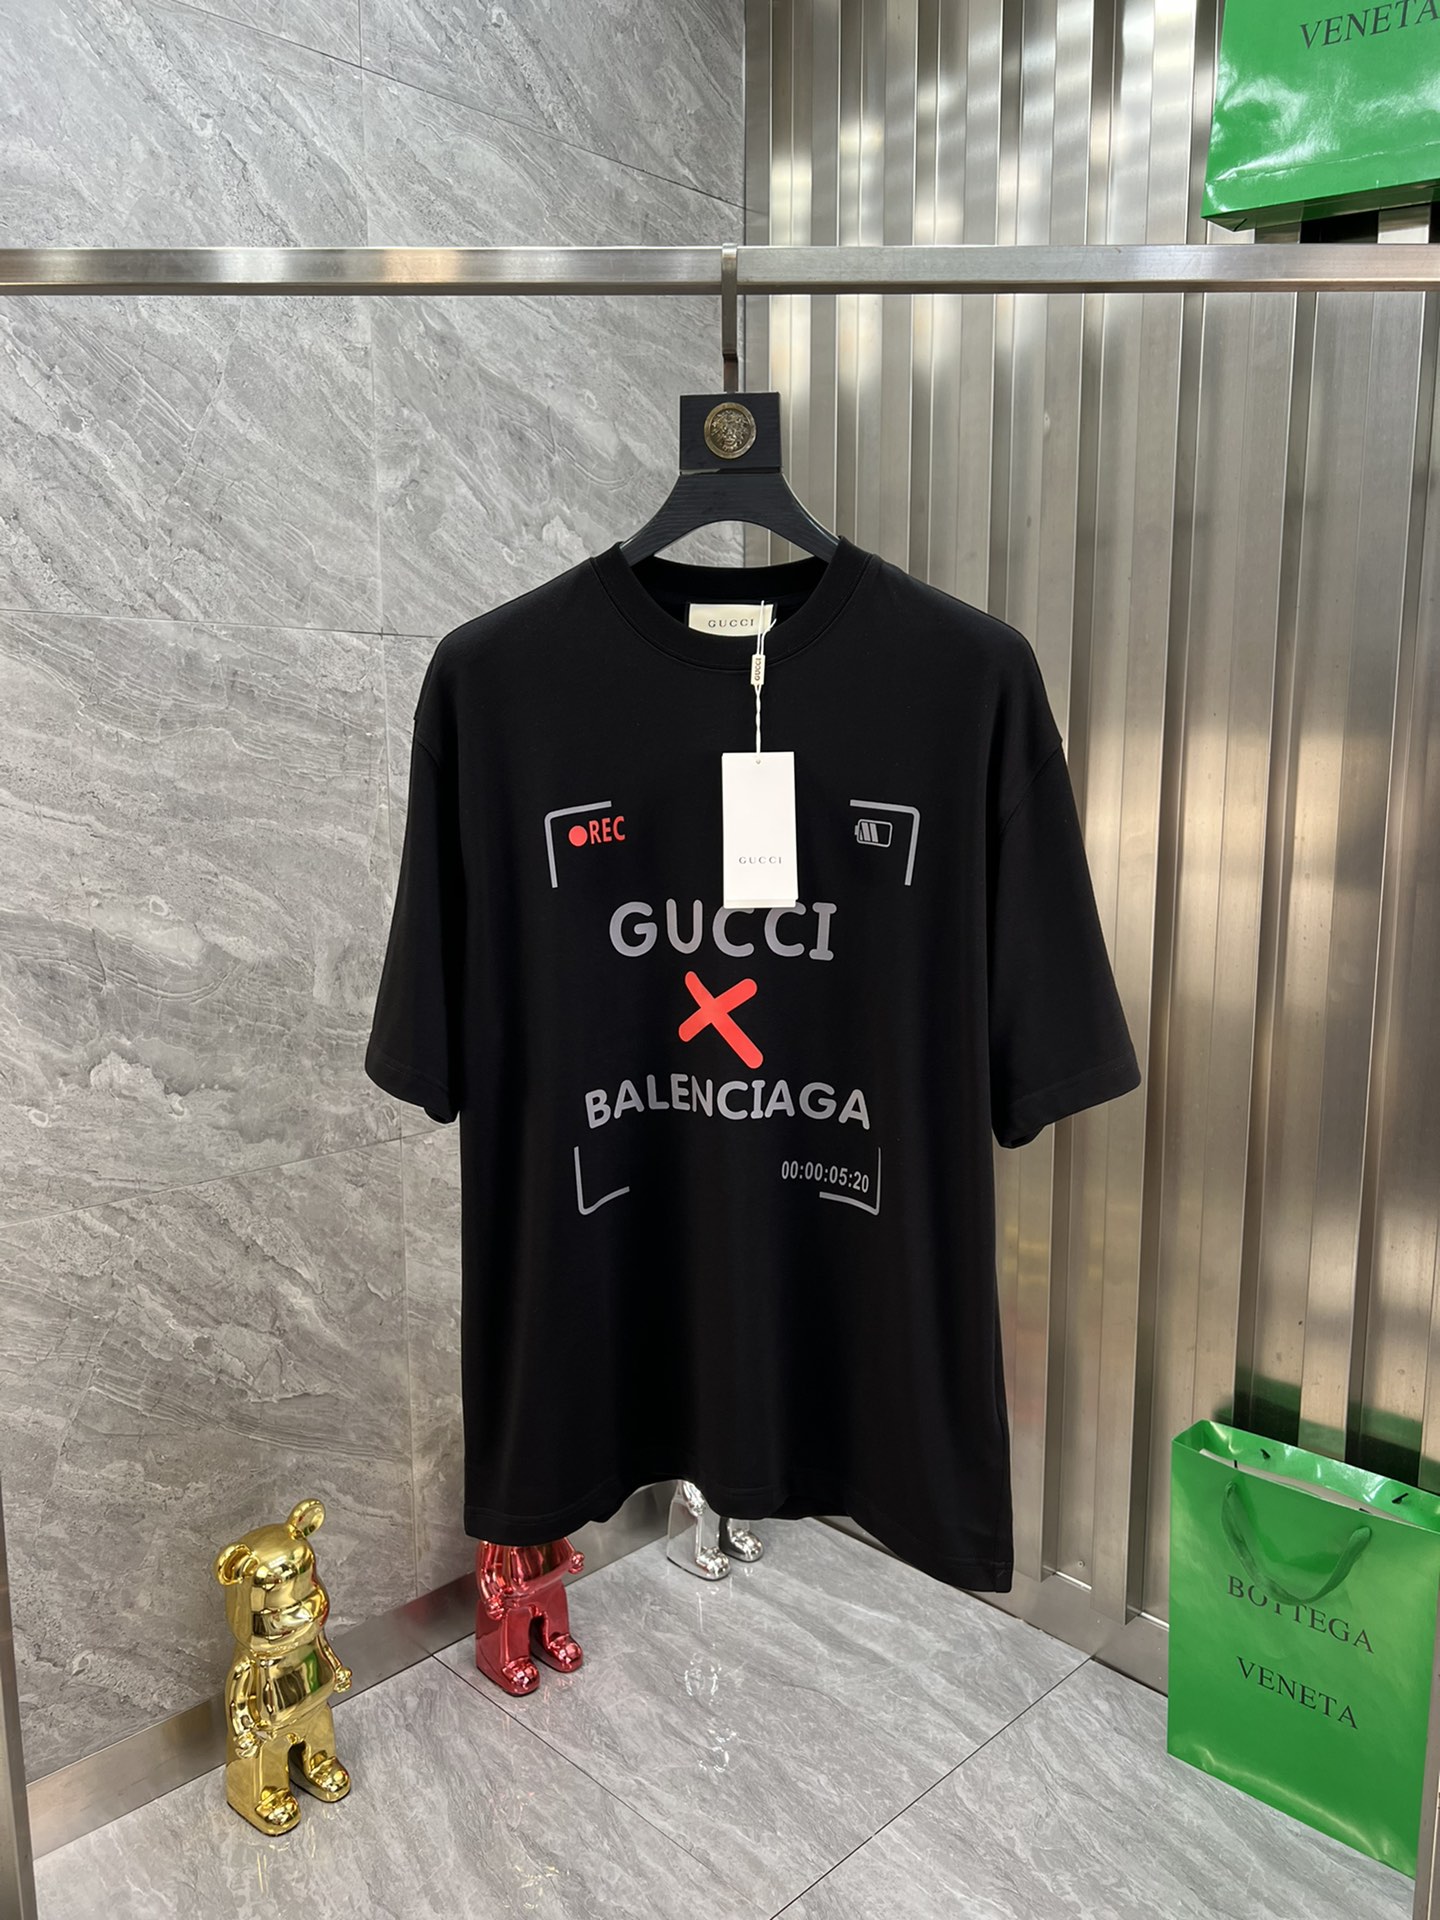 Gucci/巴黎世家 聯名款 春夏新品 三標齊全 T恤短袖